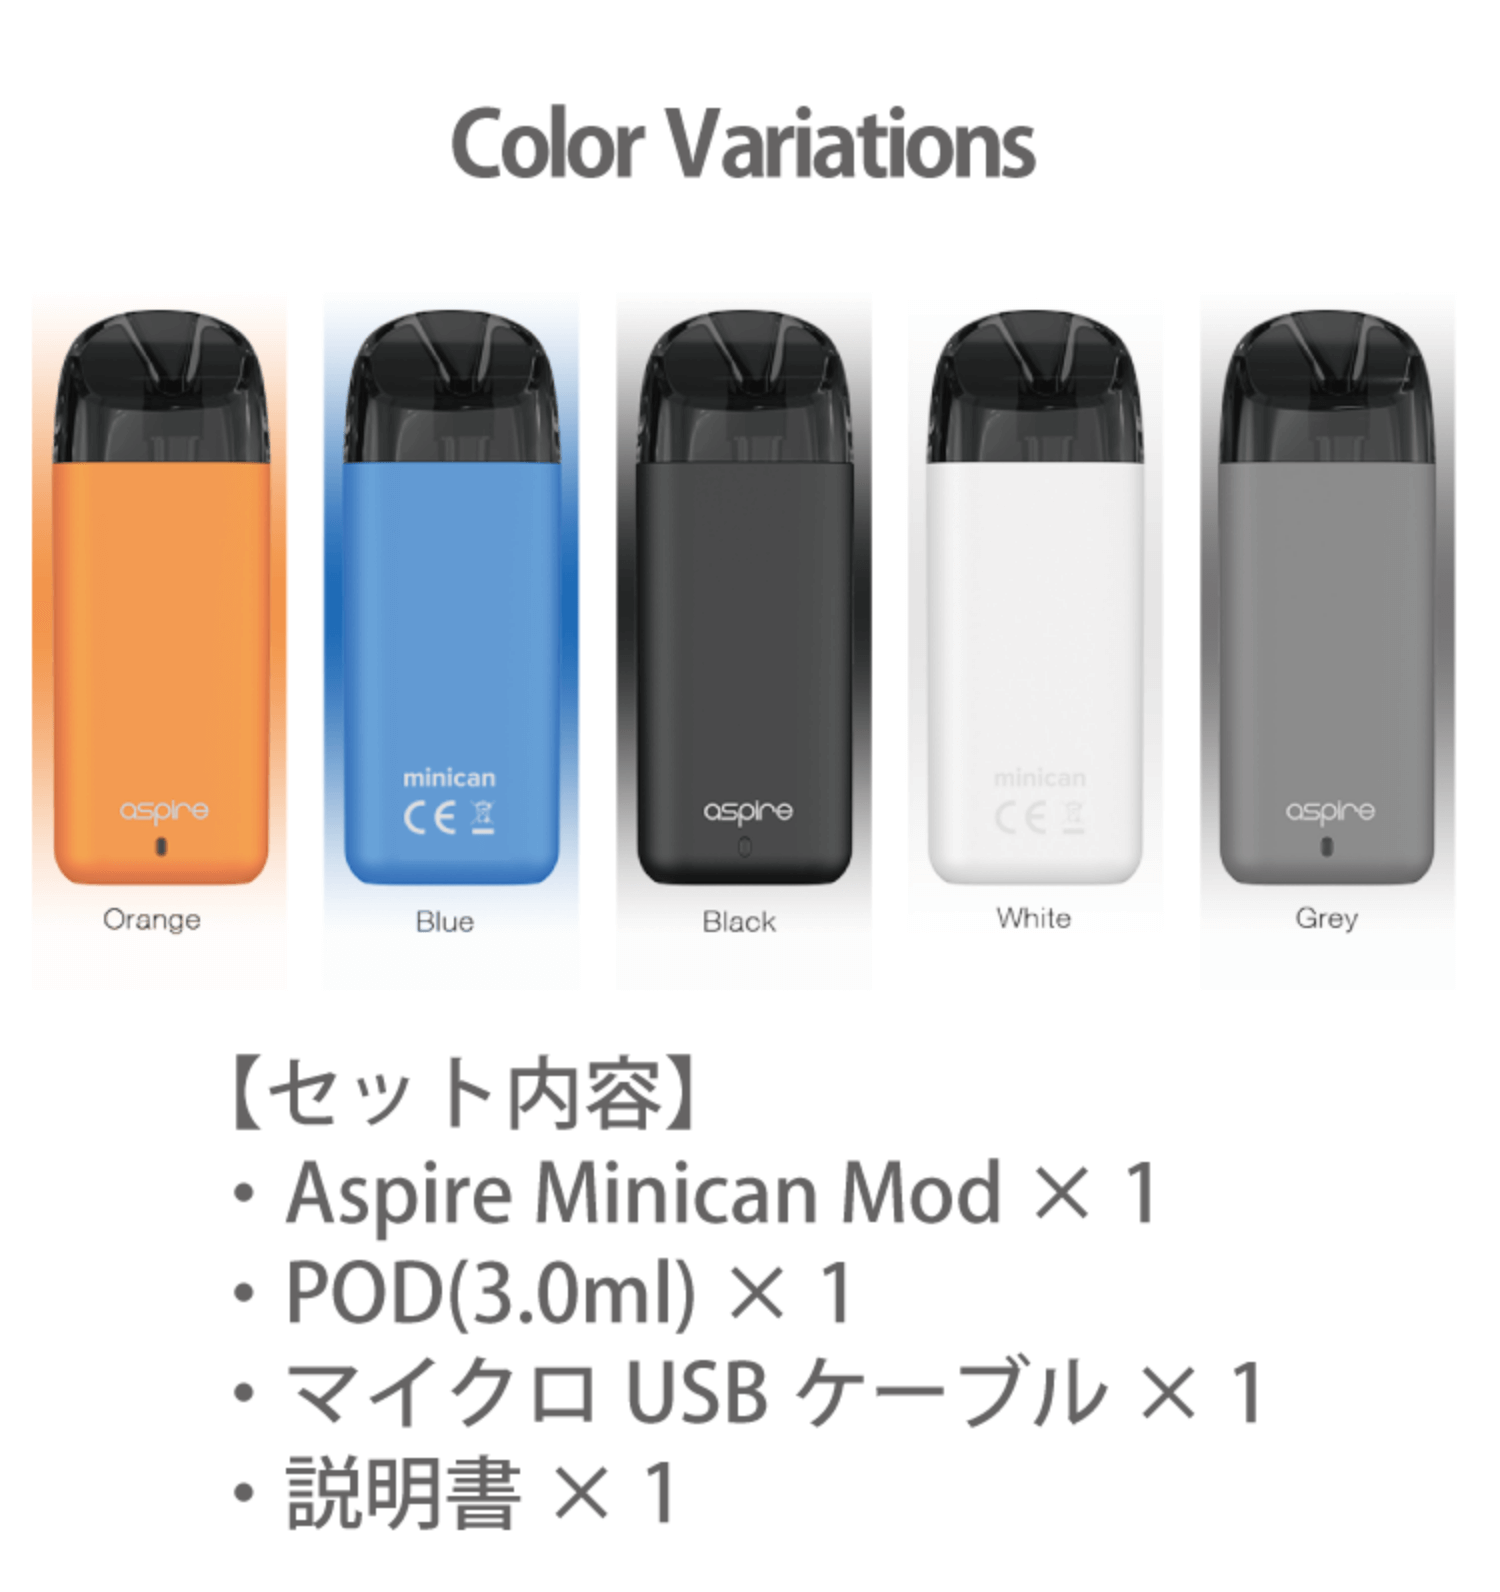 セット内容 Aspire Minican Mod 1 POD(3.0ml) 1 マイクロUSBケーブル 1 説明書 1 ご購入はこちら